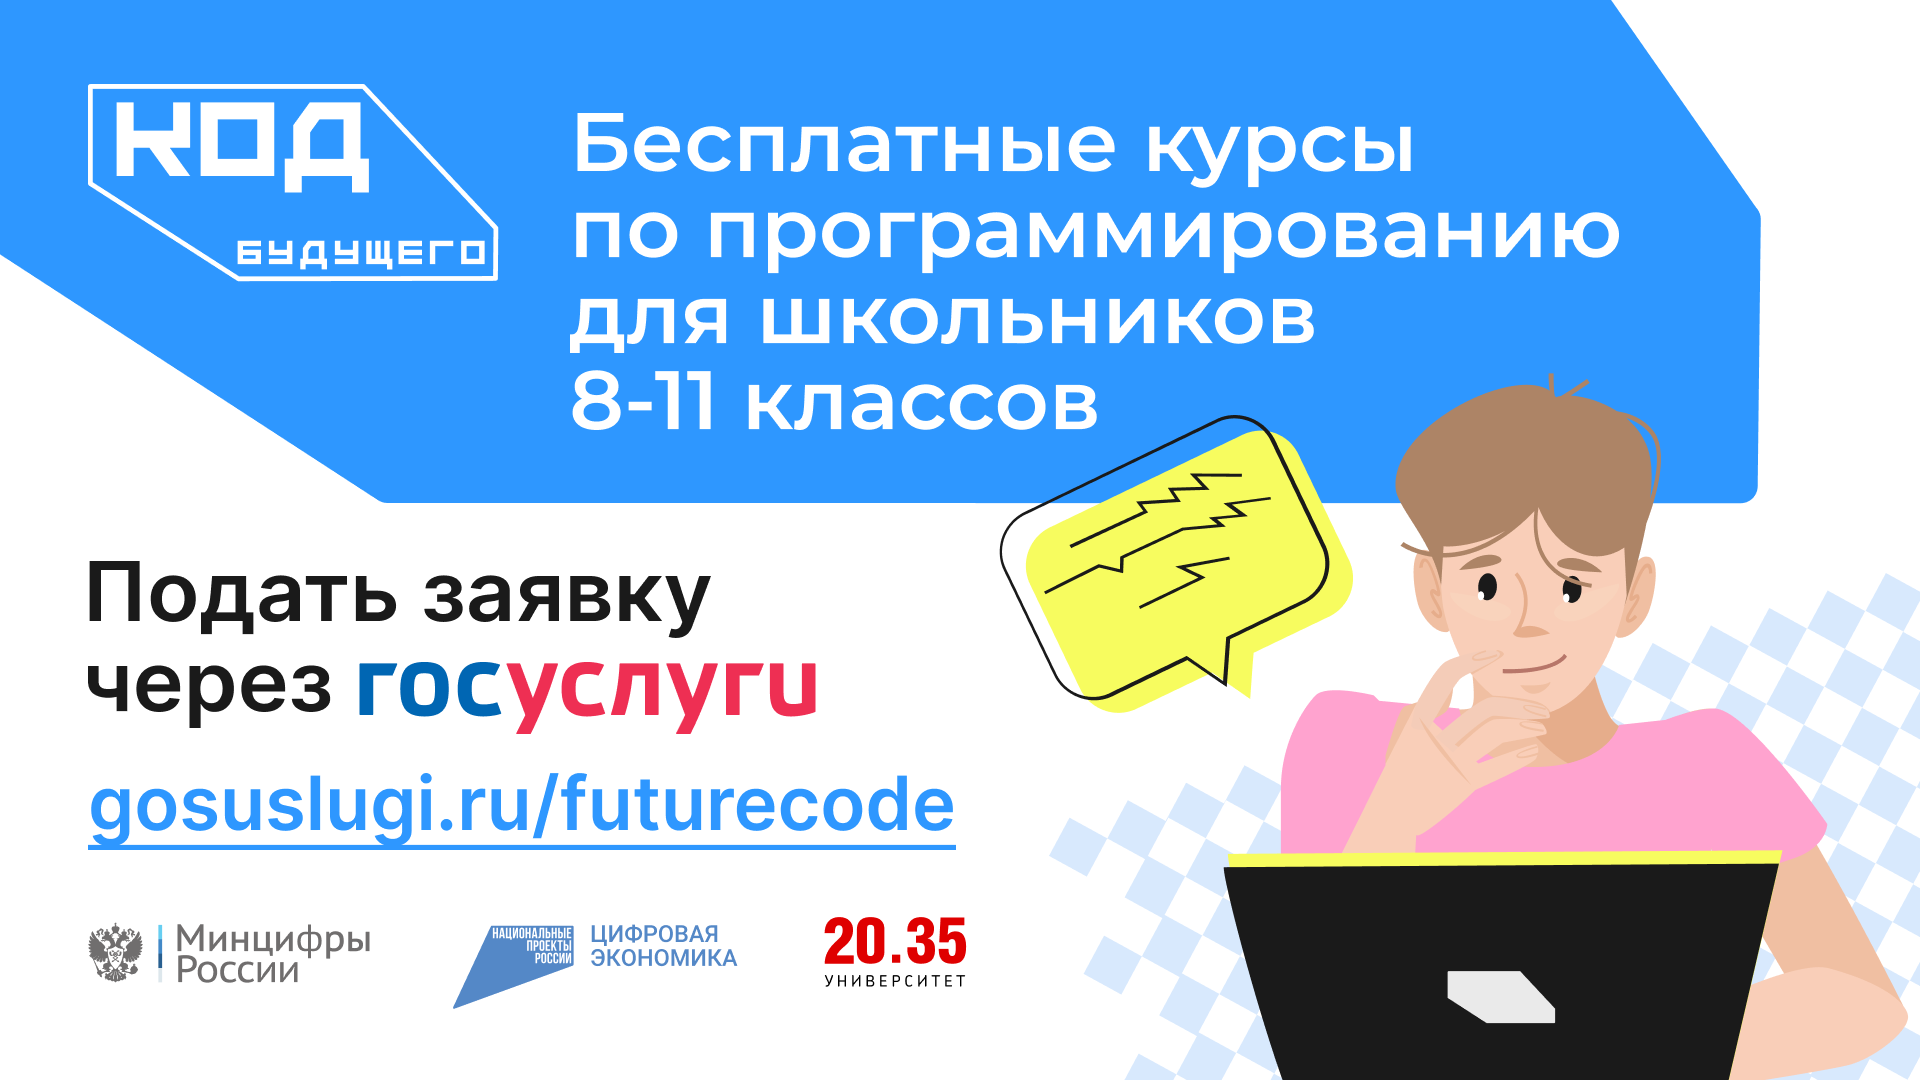 «Код будущего» — уникальный образовательный проект.